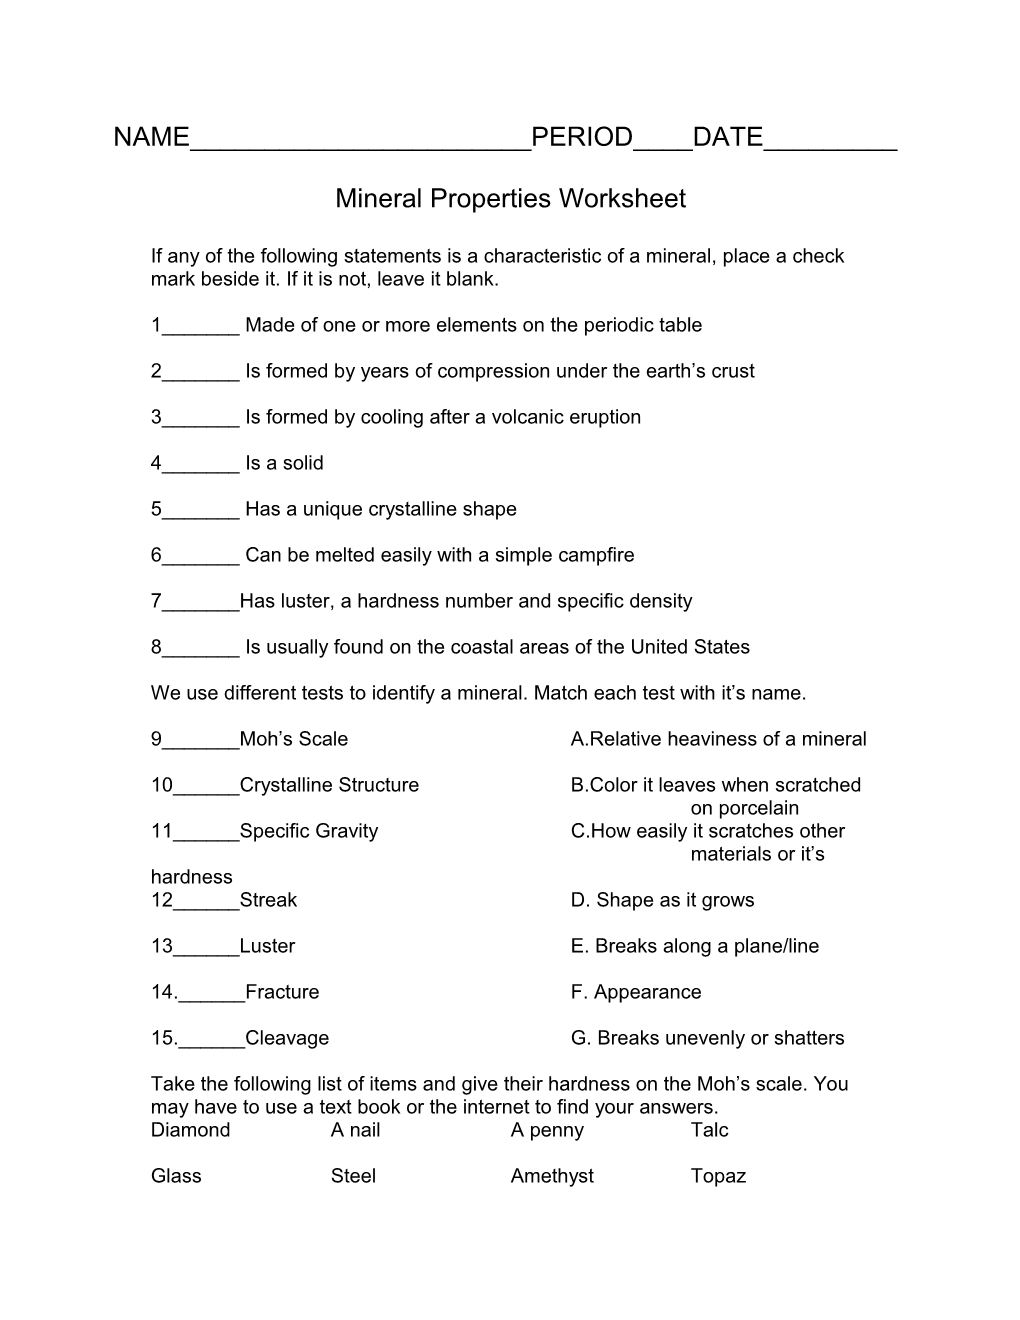 Mineral Properties Worksheet